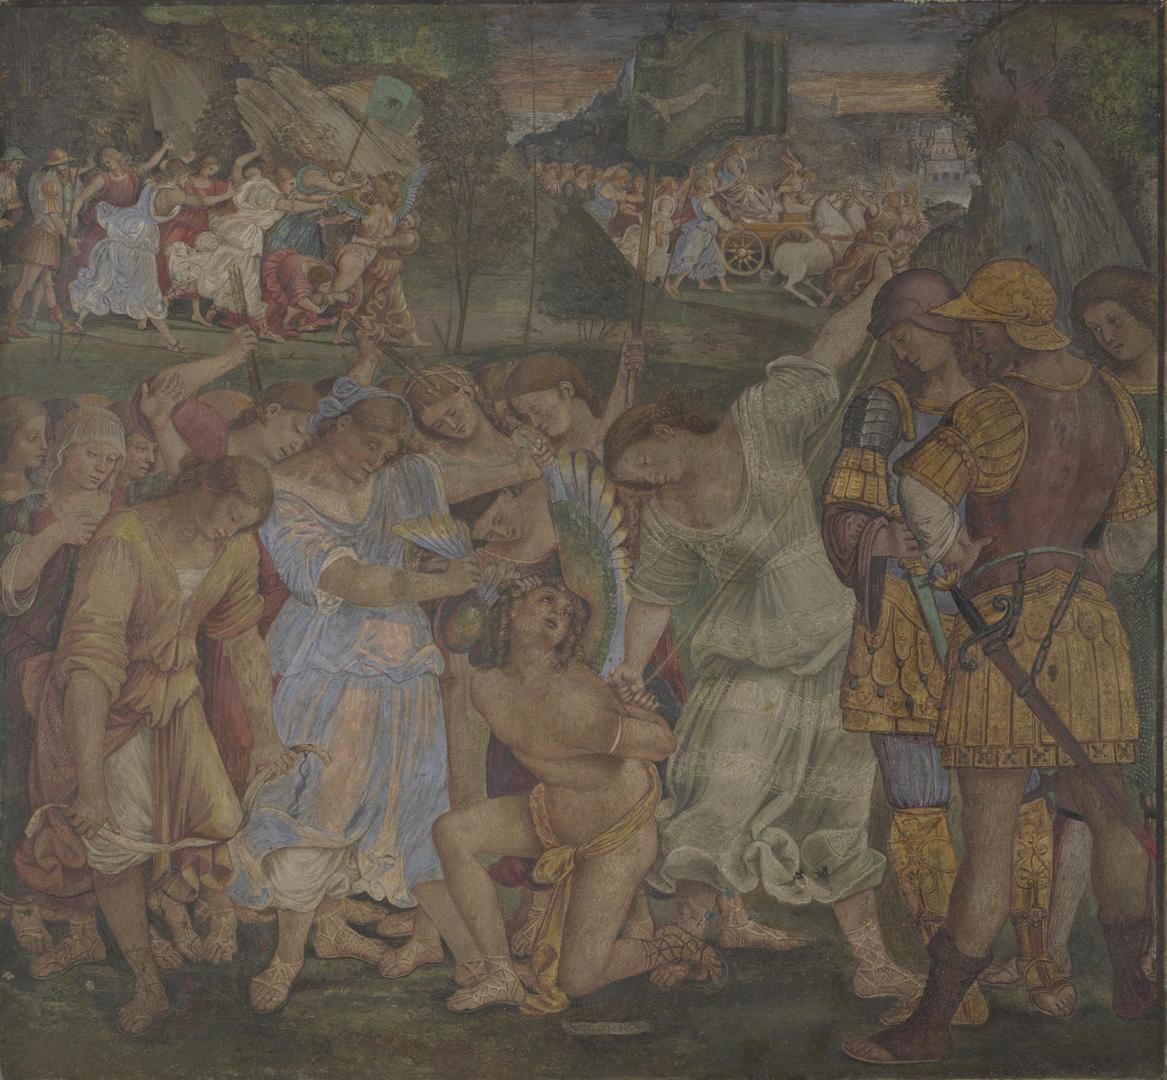 Luca Signorelli, Amour vaincu et triomphe de la chasteté (vers 1509 ; fresque transférée sur toile, 125,7 x 133,4 cm ; Londres, National Gallery)